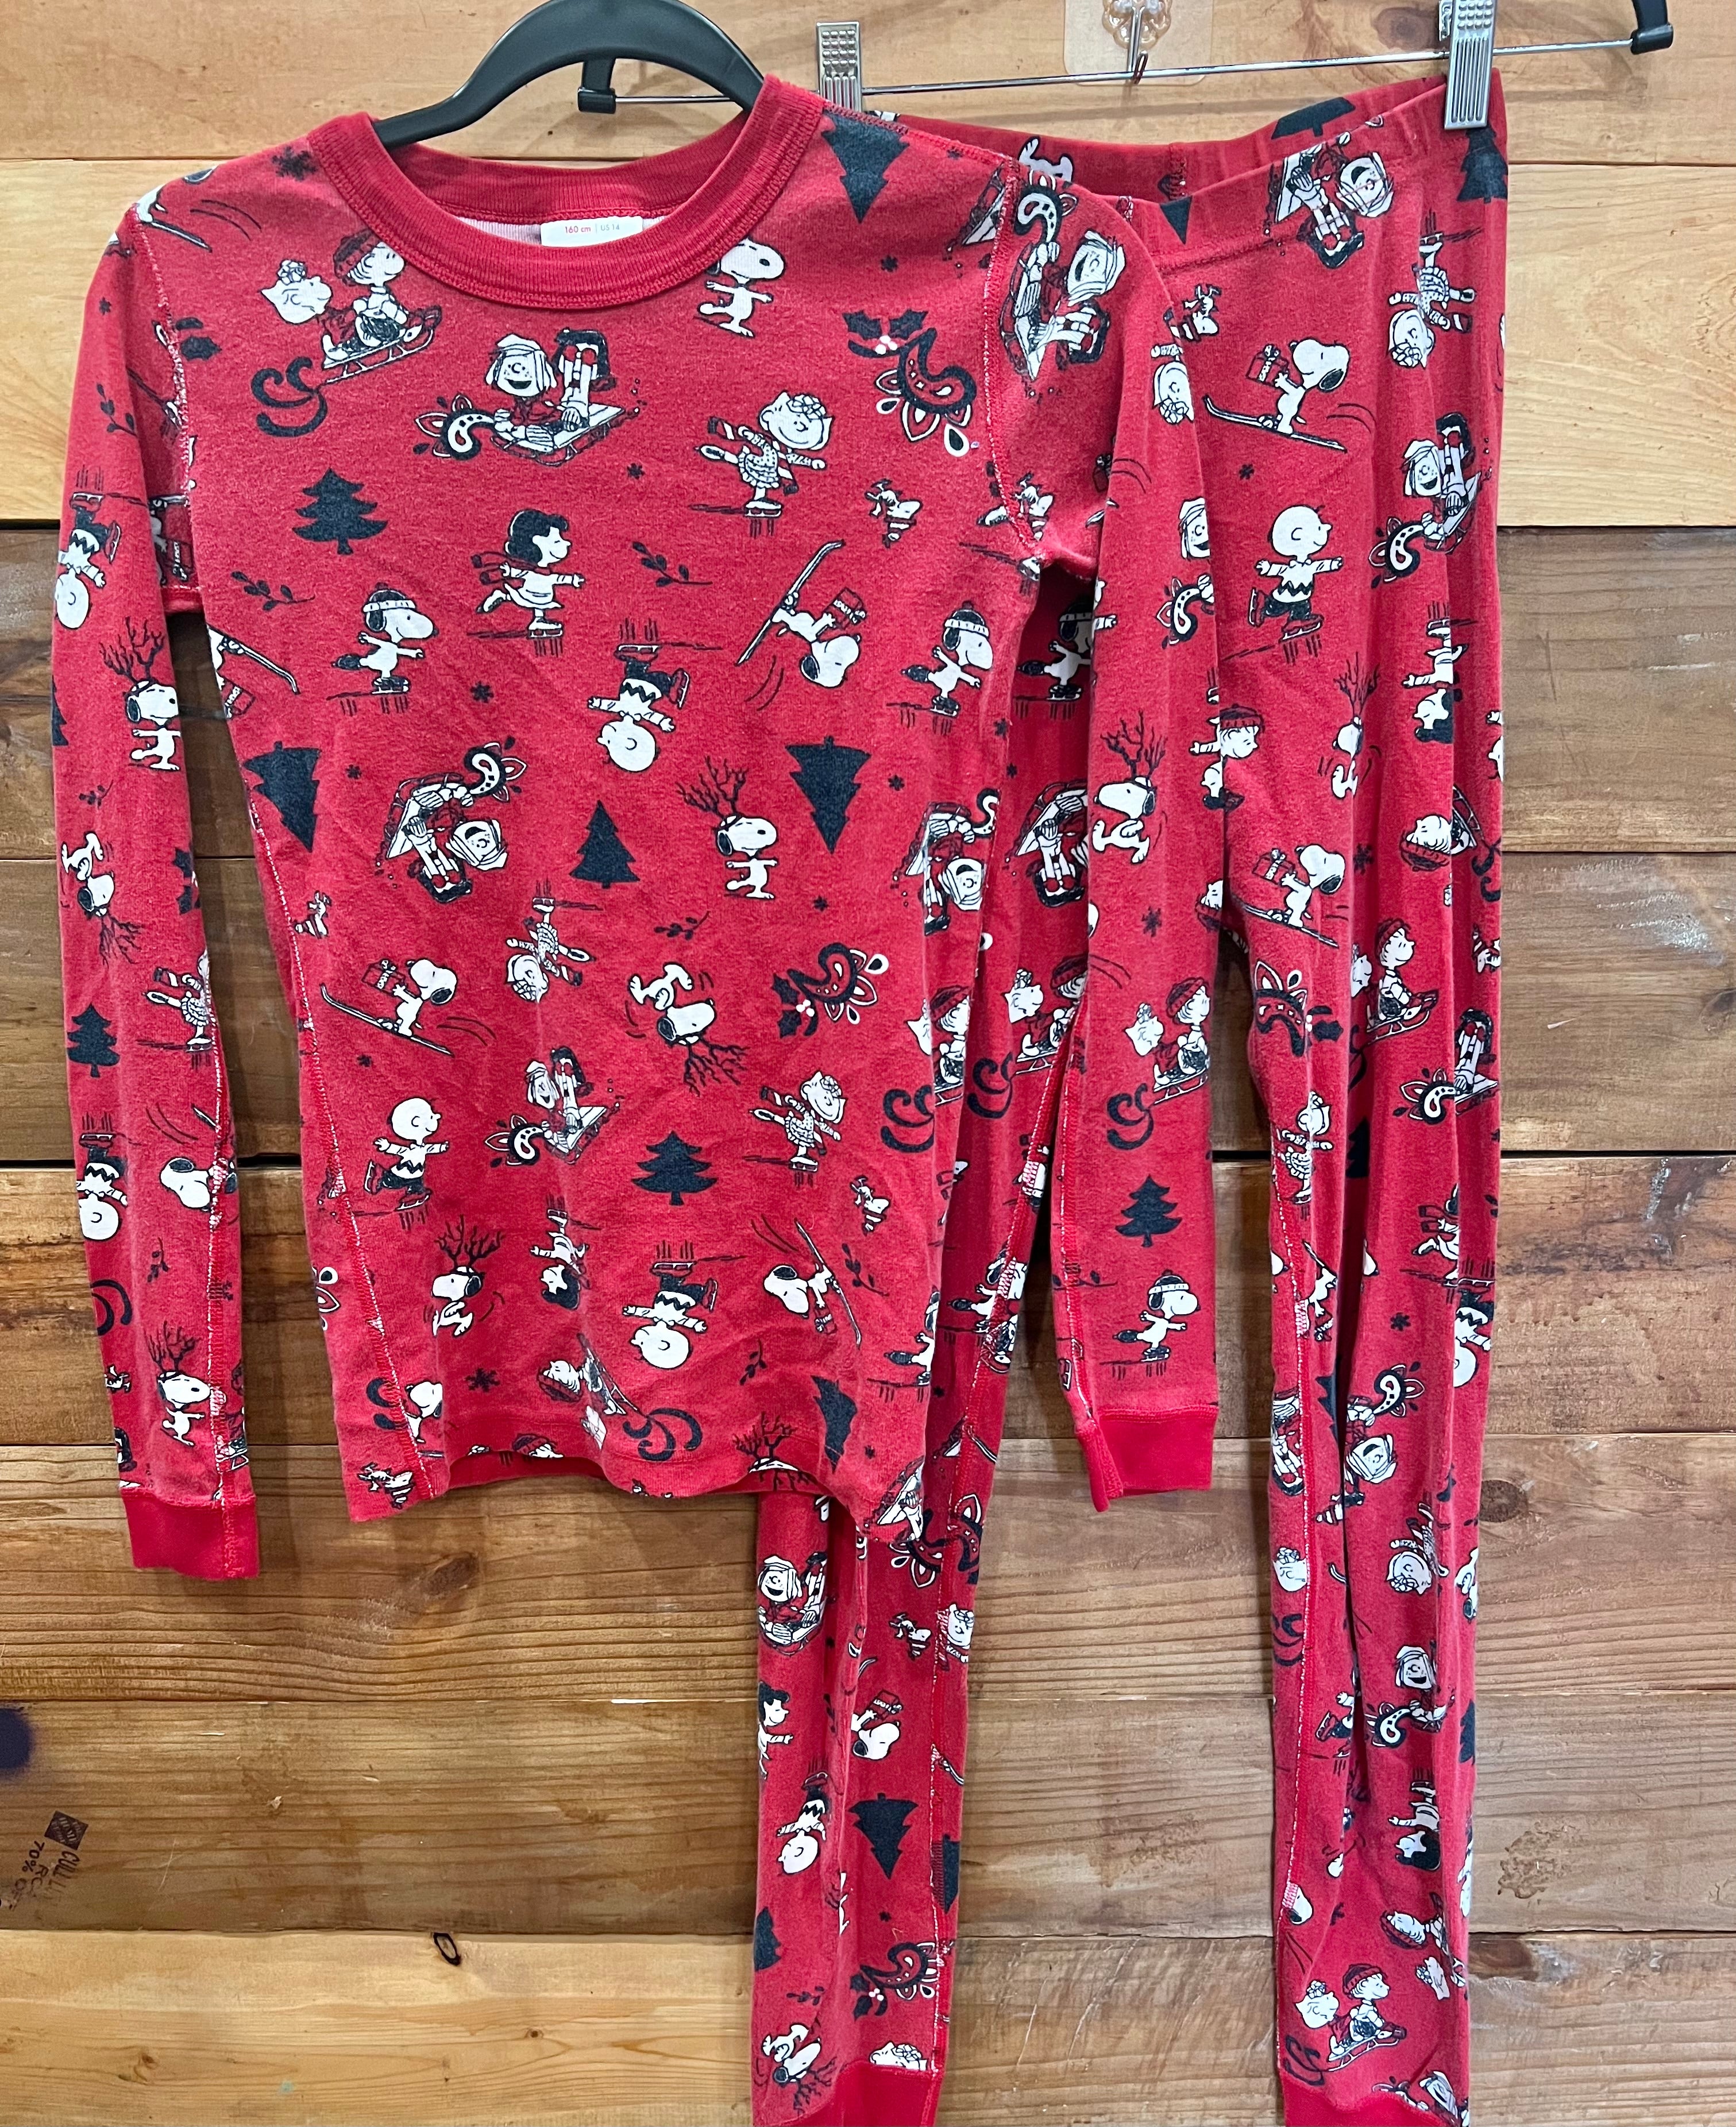 PRINCE OF SLEEP Plush Pajama Pants - Fleece PJs for Boys (Red Buffalo Plaid  Jogger, 14-16 Years)